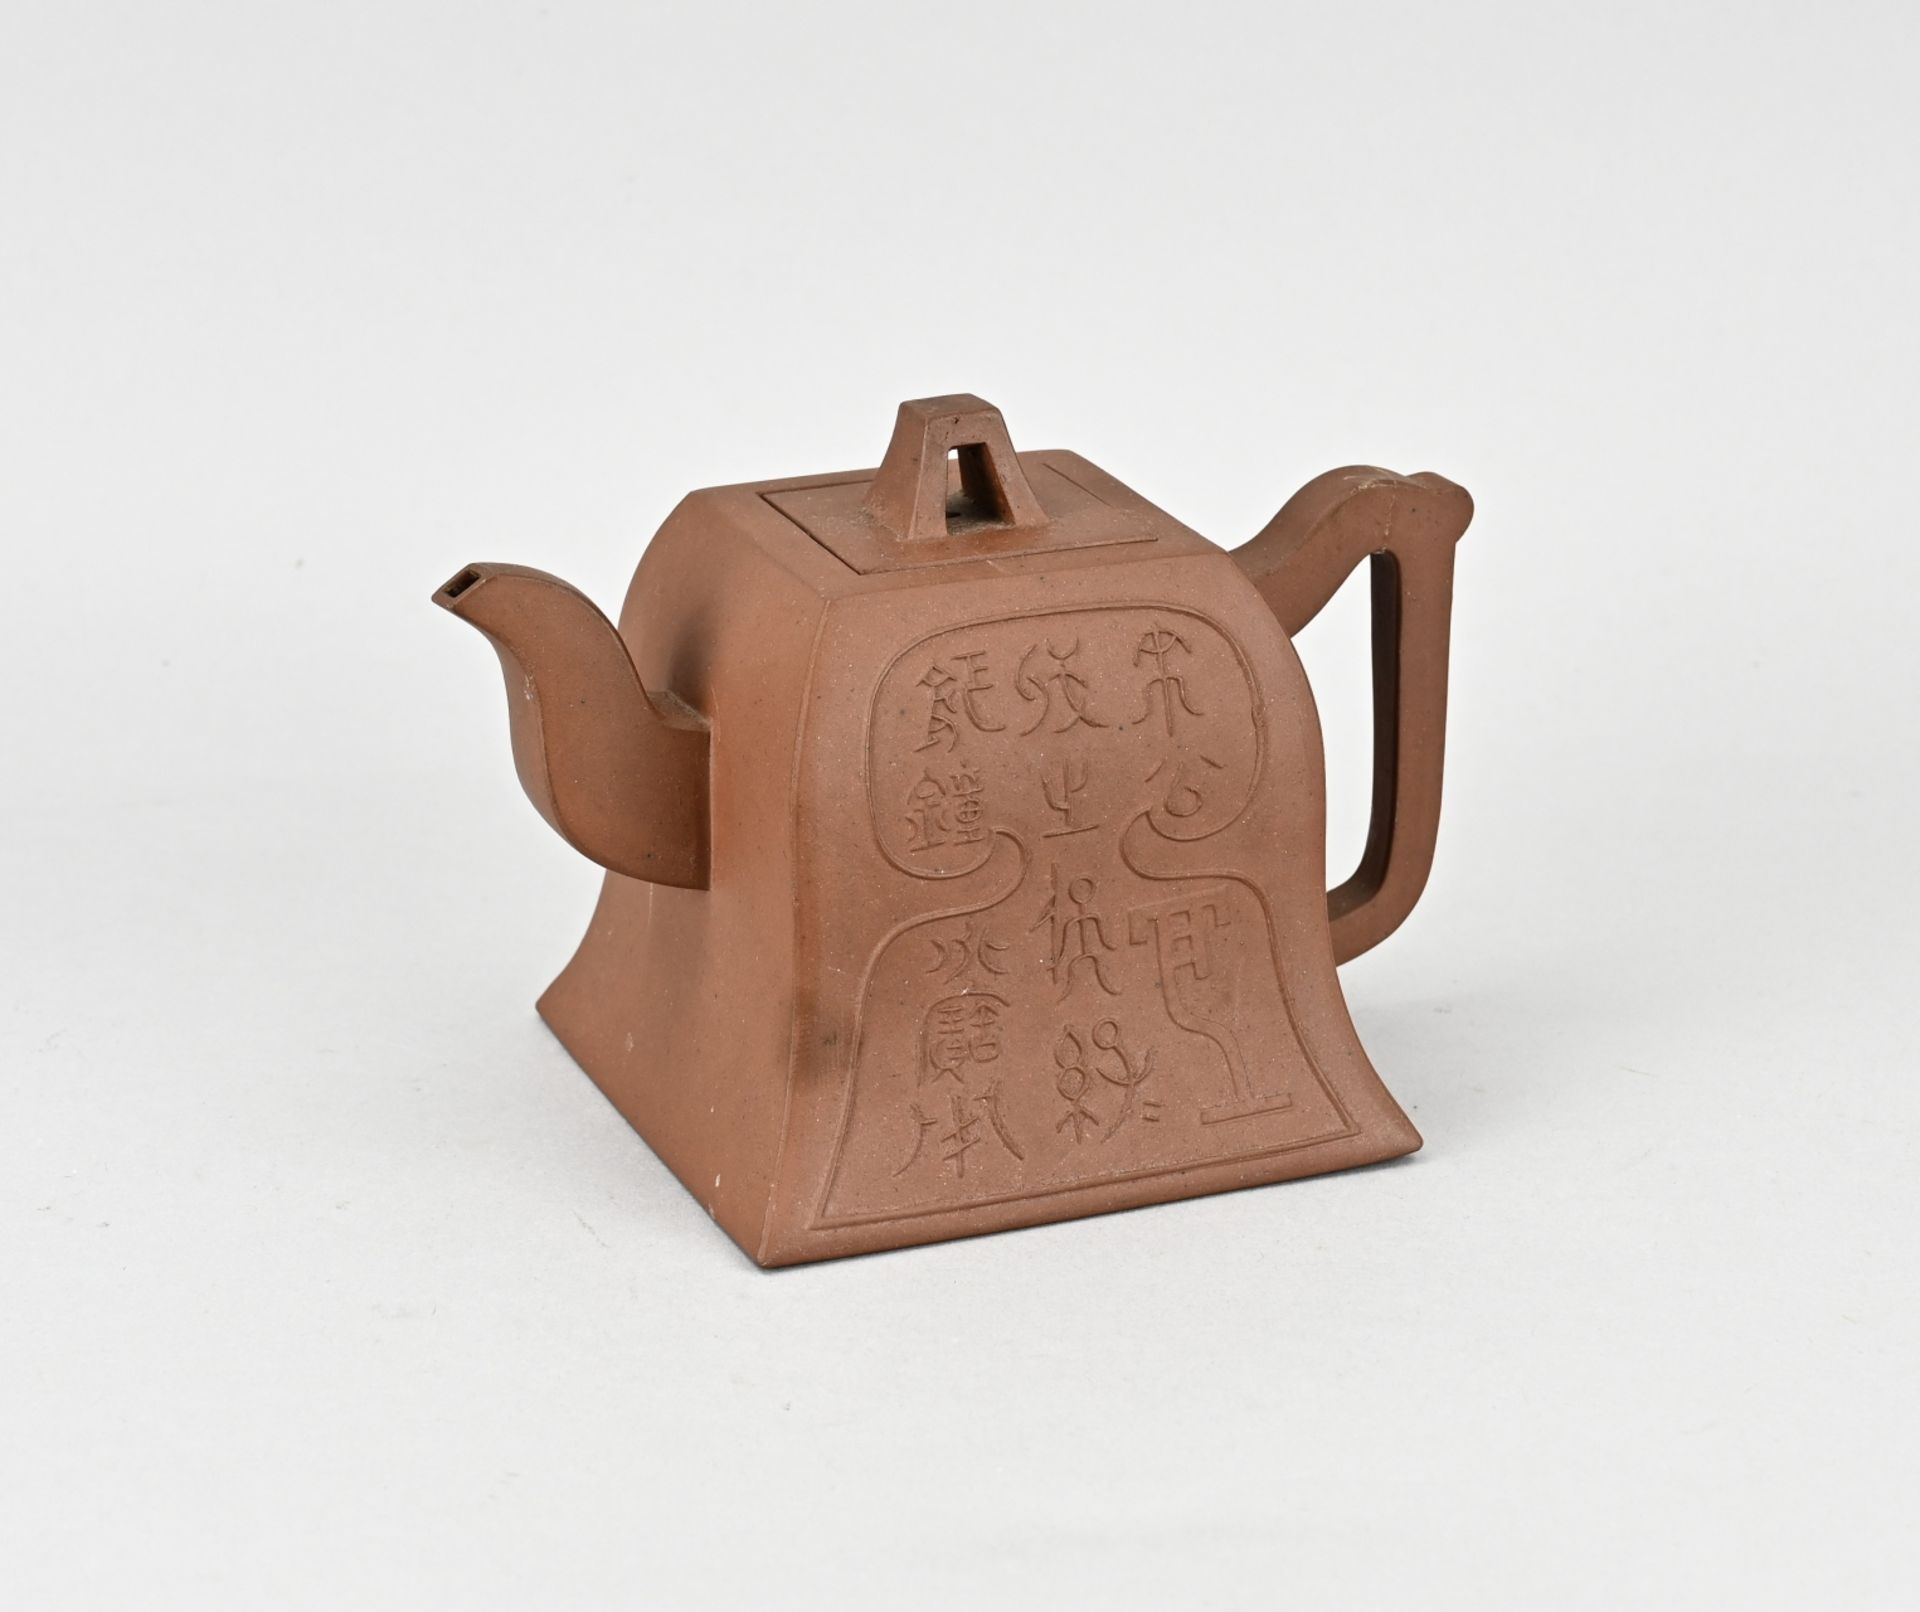 Yixing teapot (square)